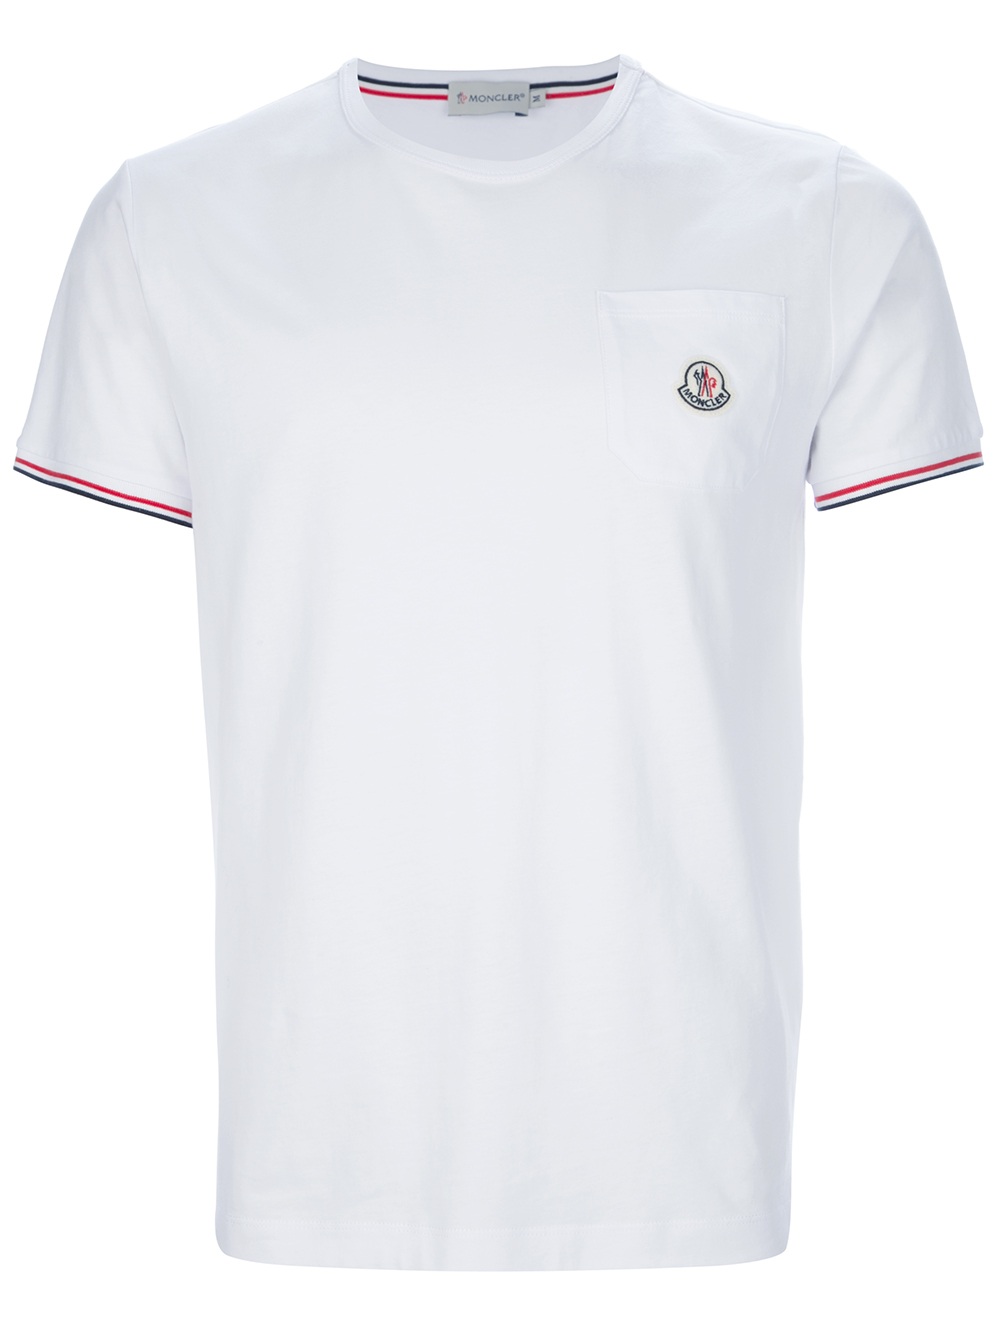 Moncler Logo Pocket Tshirt in White for Men - Lyst